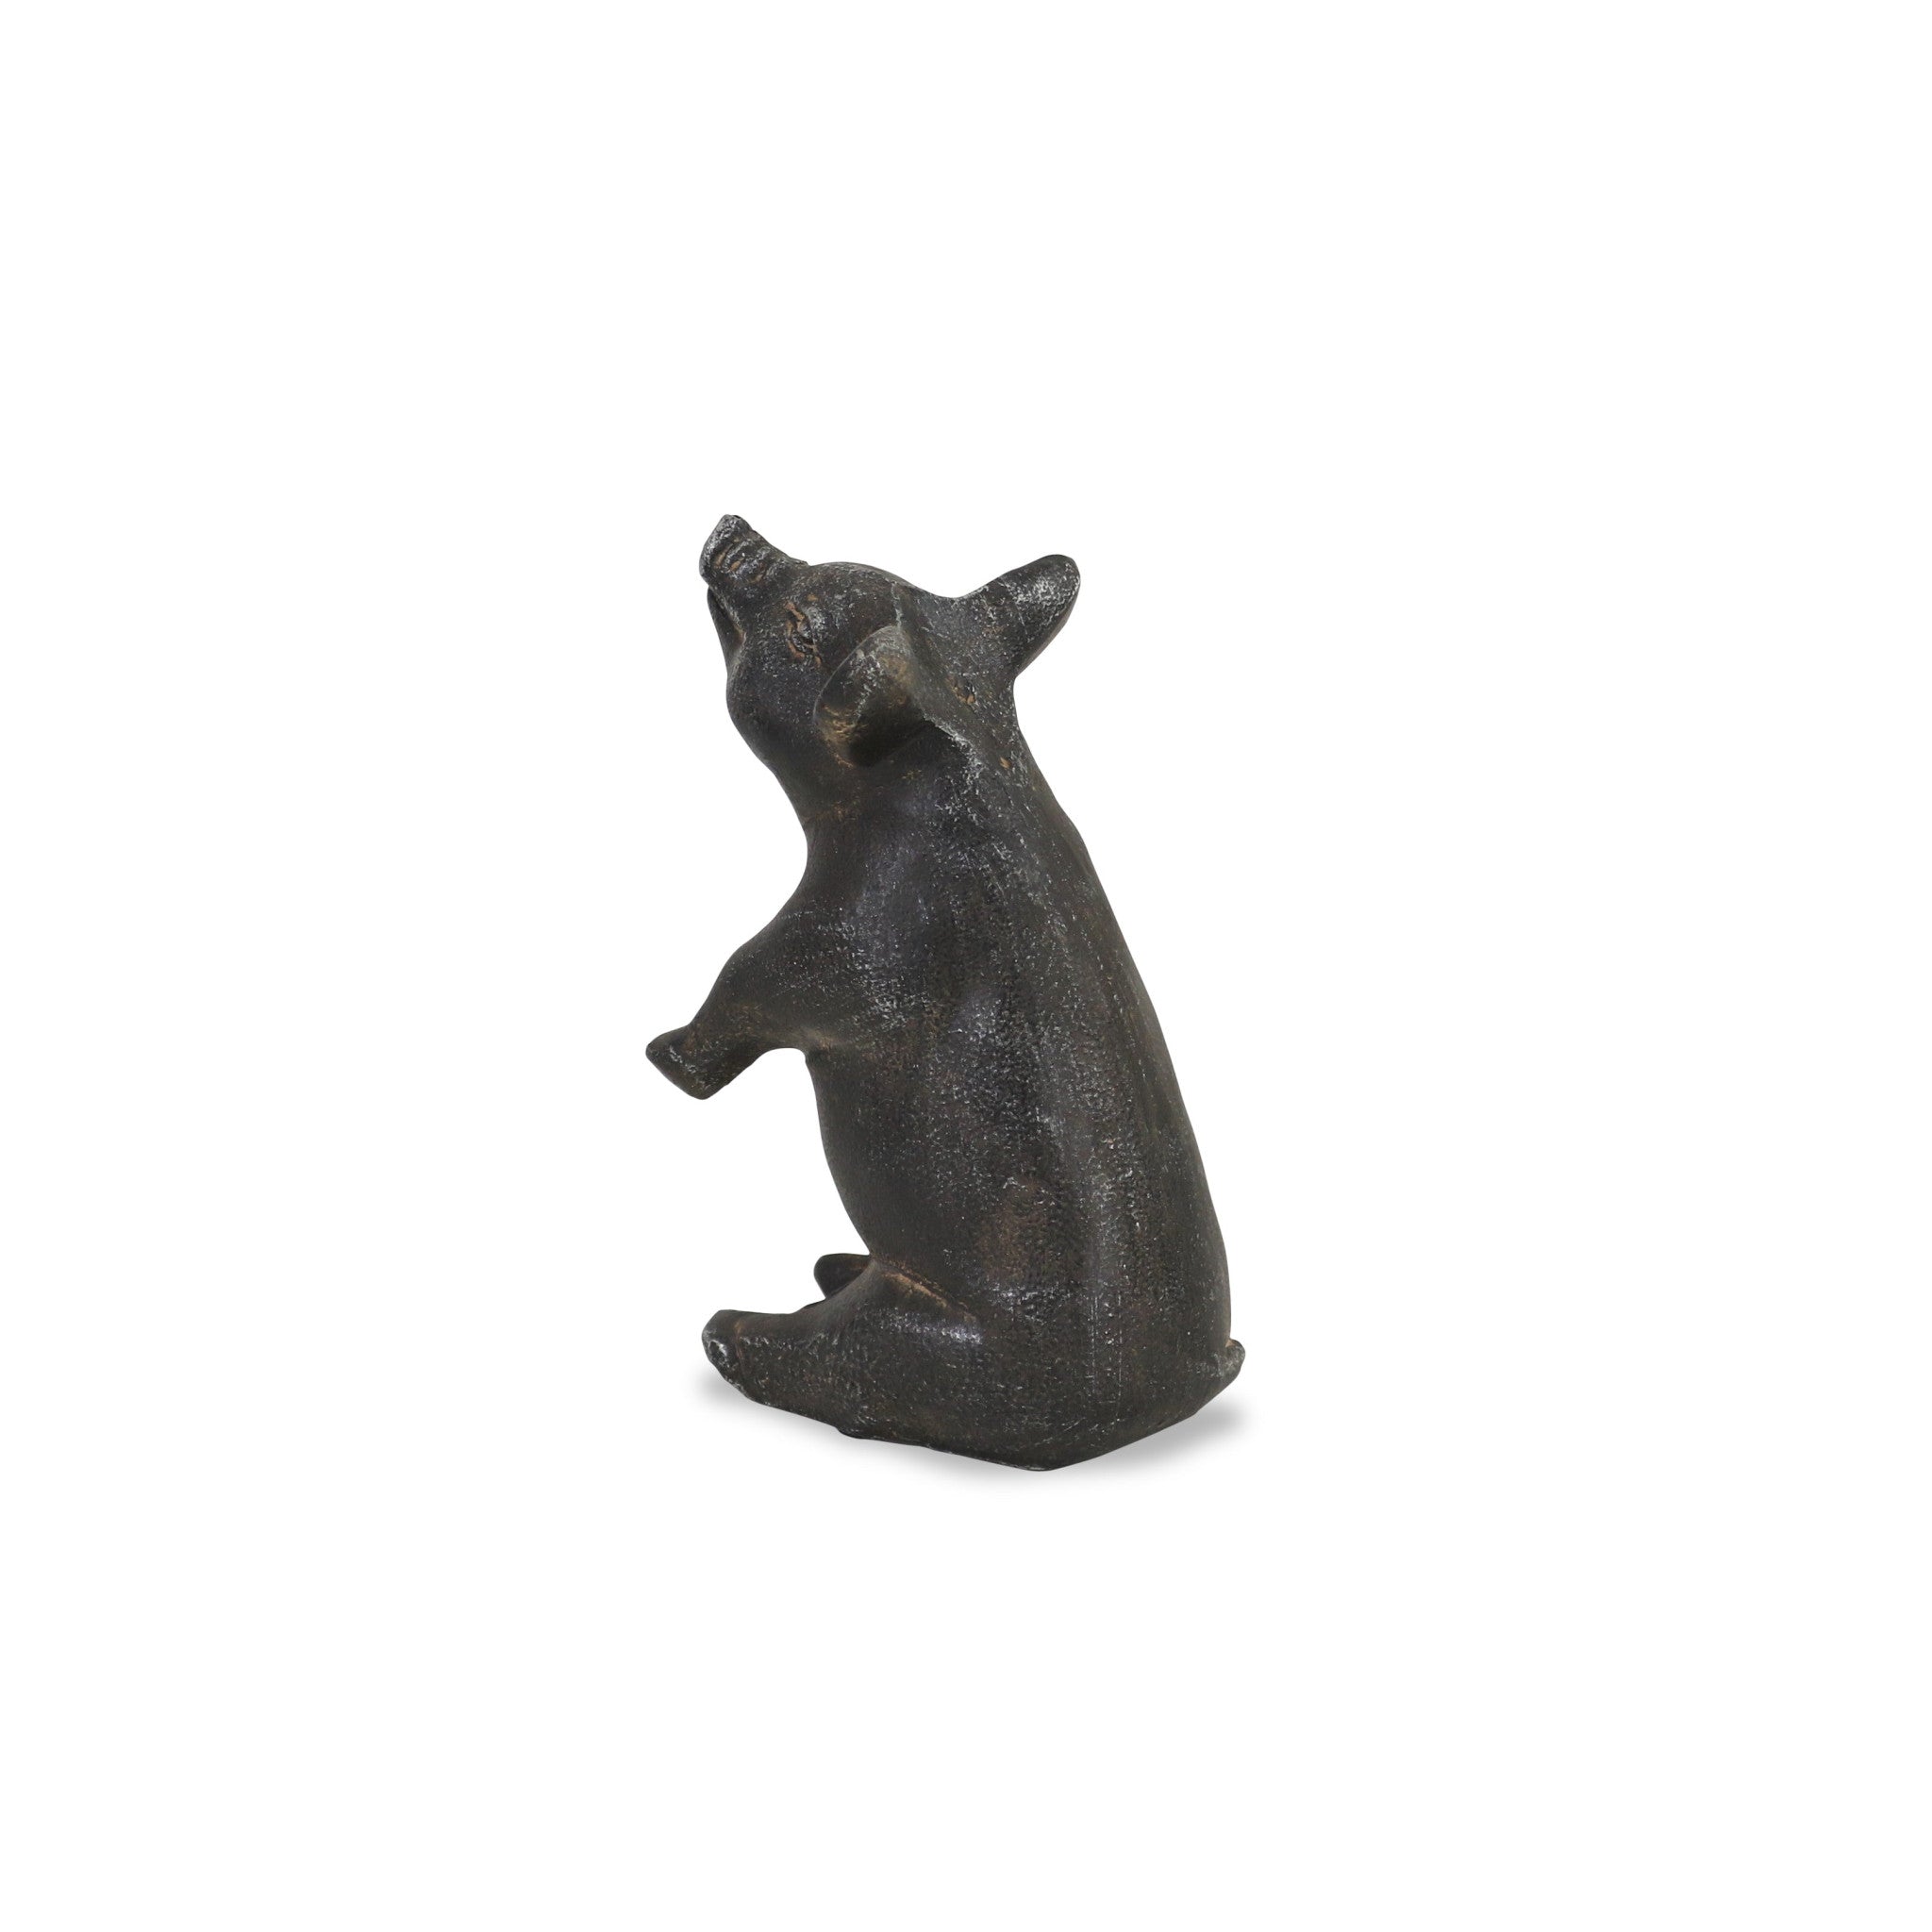 8" Black Rustic Metal Pig Figurine